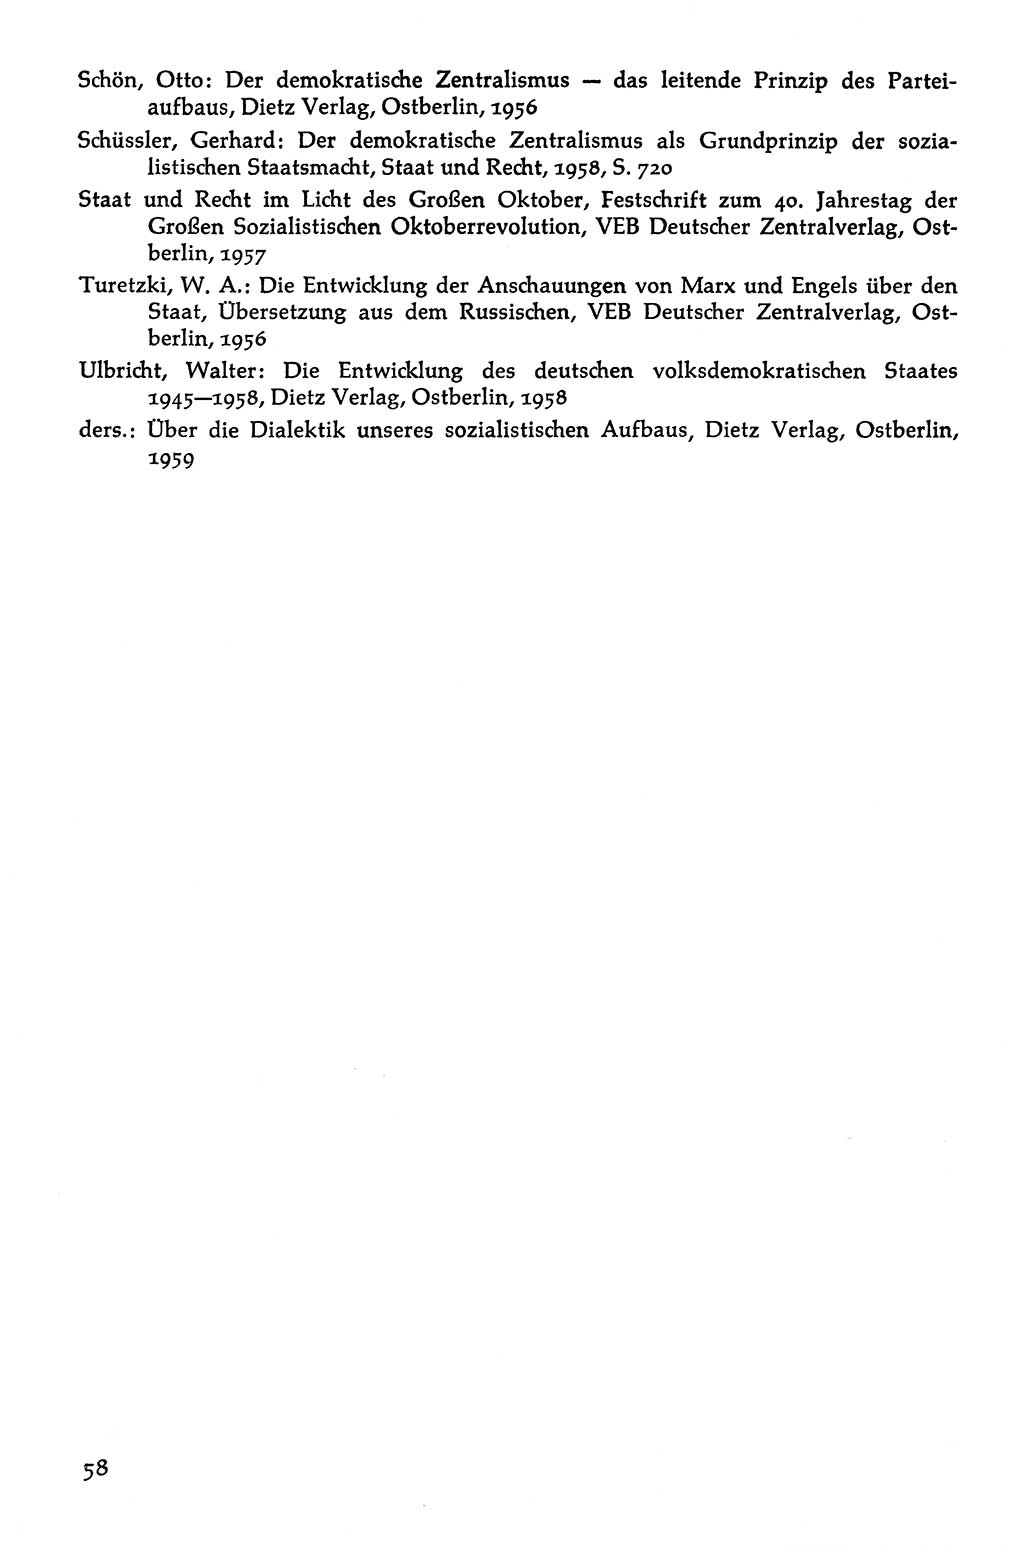 Volksdemokratische Ordnung in Mitteldeutschland [Deutsche Demokratische Republik (DDR)], Texte zur verfassungsrechtlichen Situation 1963, Seite 58 (Volksdem. Ordn. Md. DDR 1963, S. 58)